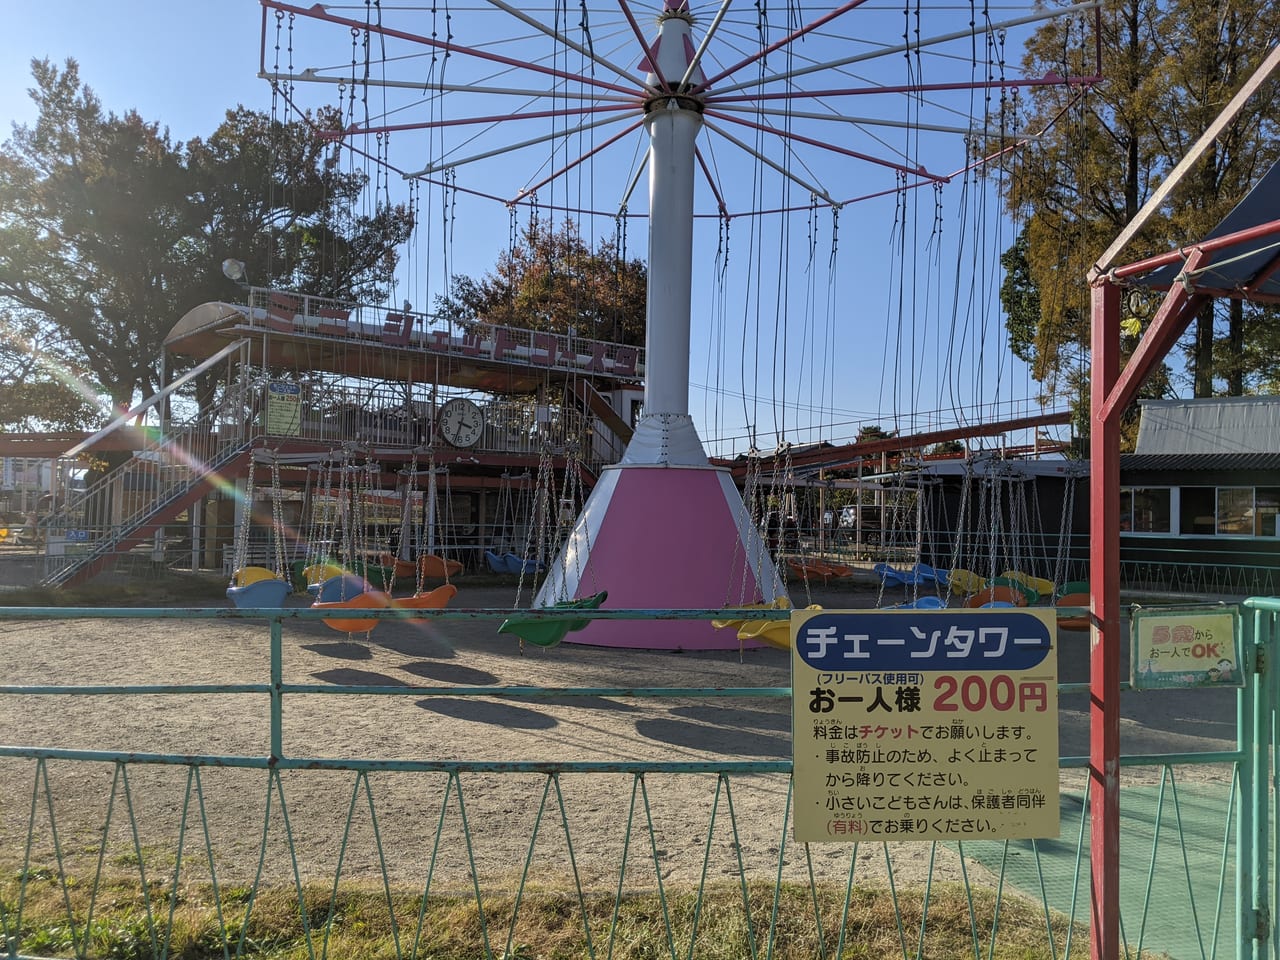 佐賀市 神野公園こども遊園地は入場料無料 たくさんの楽しいアトラクションにレストラン ポニーのコニィちゃんも人気です 号外net 佐賀 市 小城市 多久市